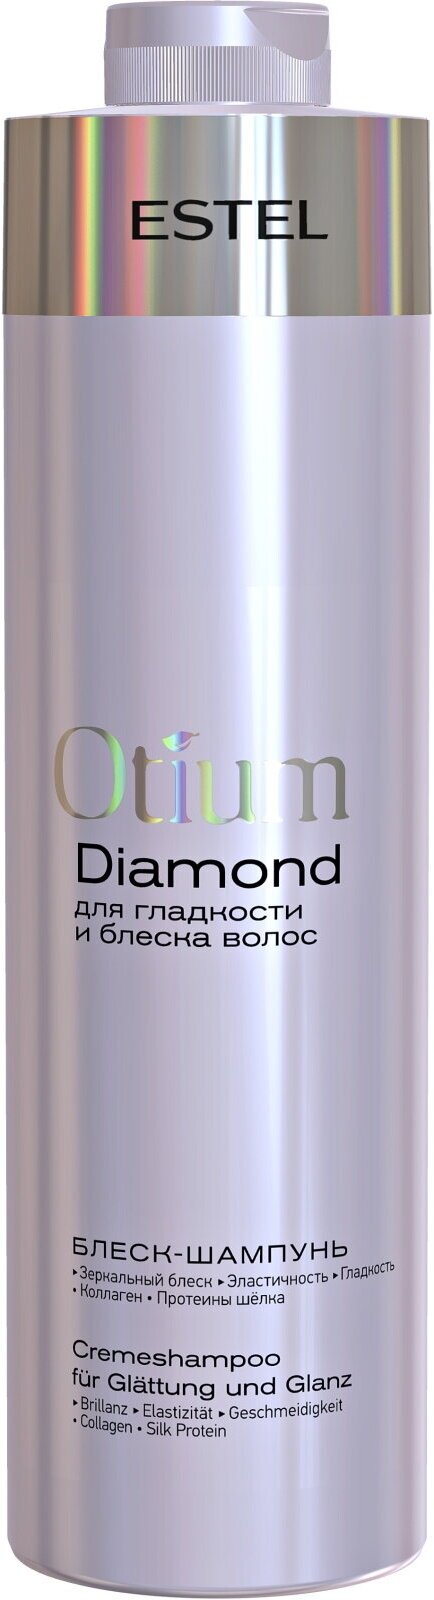 Шампунь OTIUM DIAMOND для гладкости и блеска волос ESTEL PROFESSIONAL 1000 мл